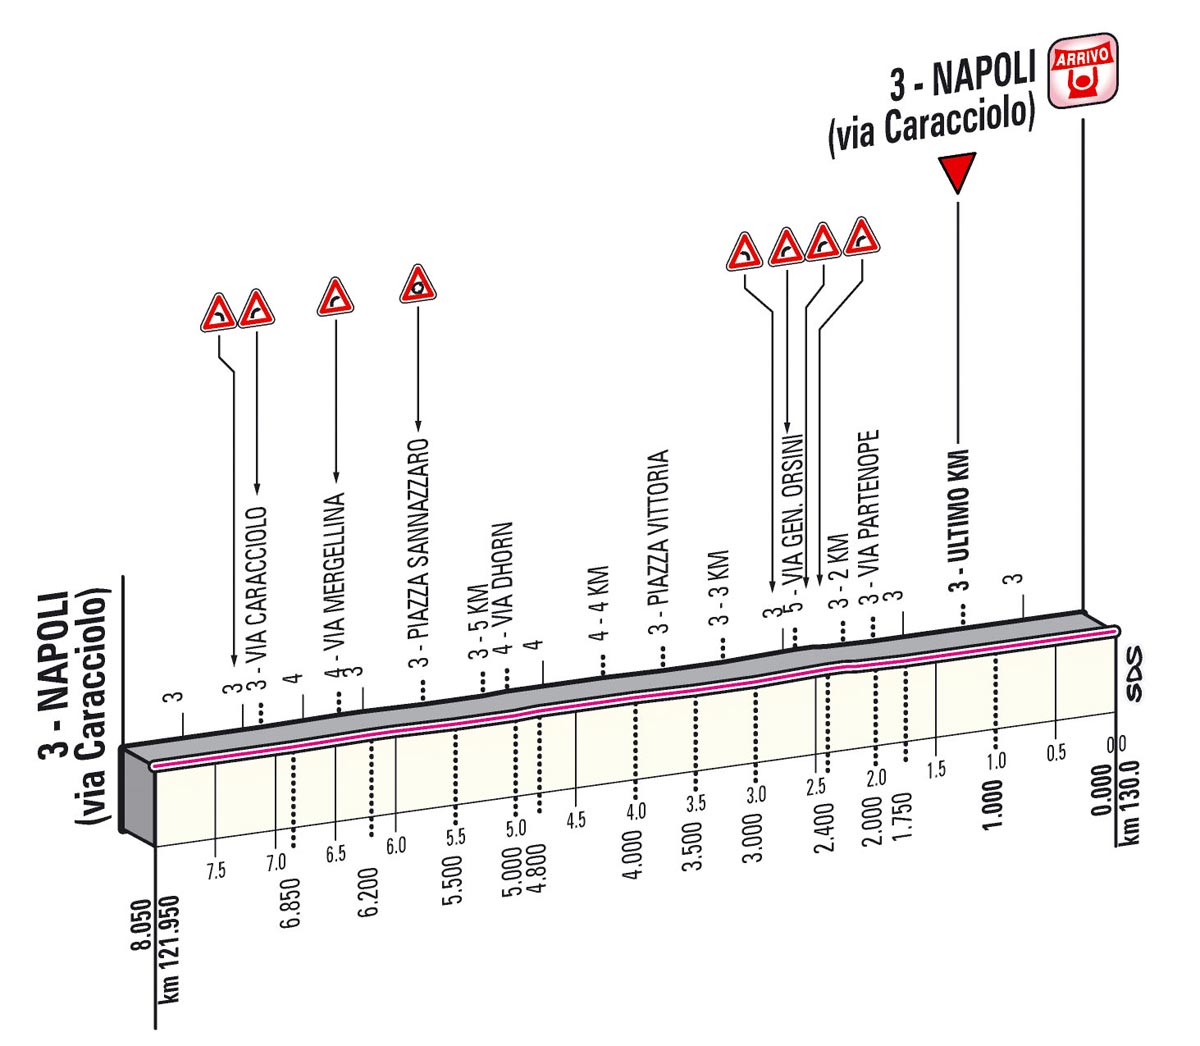 Giro d'Italia 2013 Stage 1 last kms